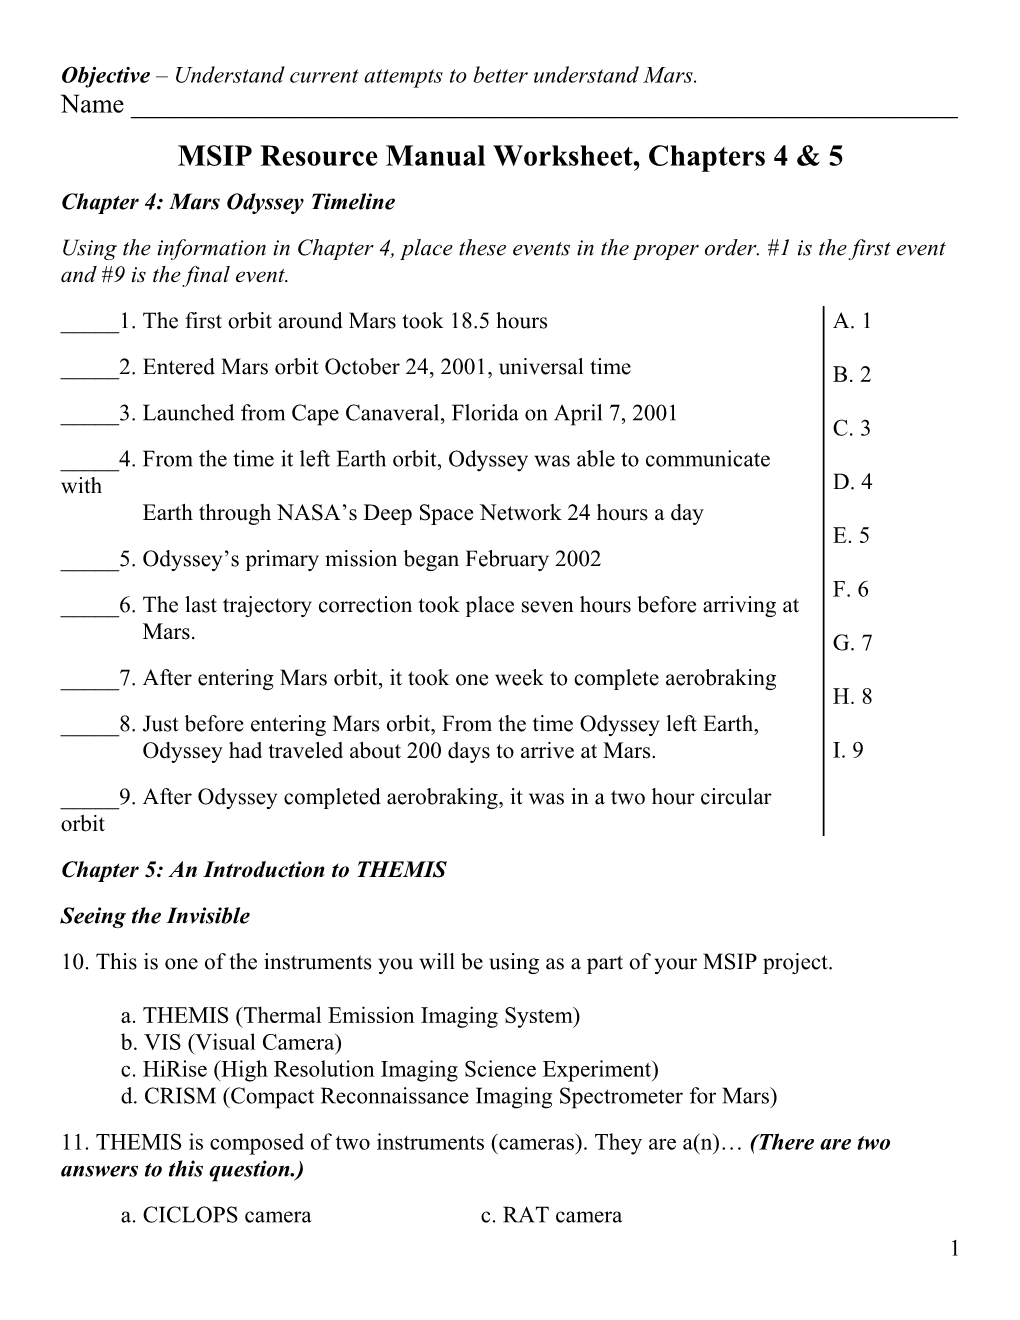 MSIP Resource Manual Worksheet, Chapters 4 & 5